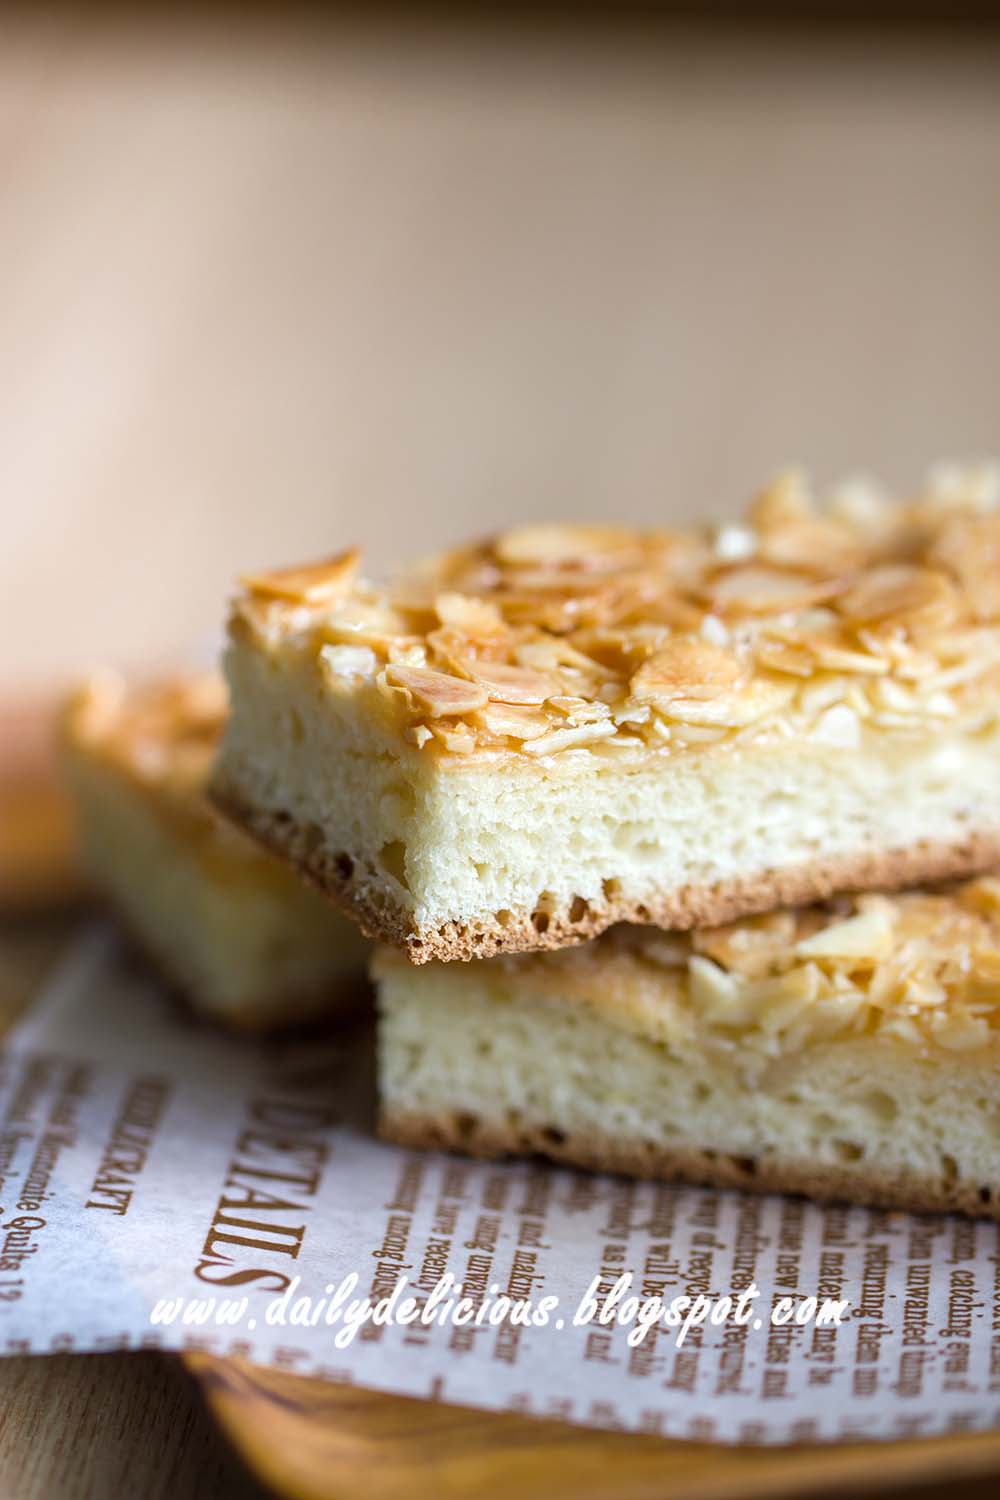 dailydelicious: Butterkuchen: Baked butter bread